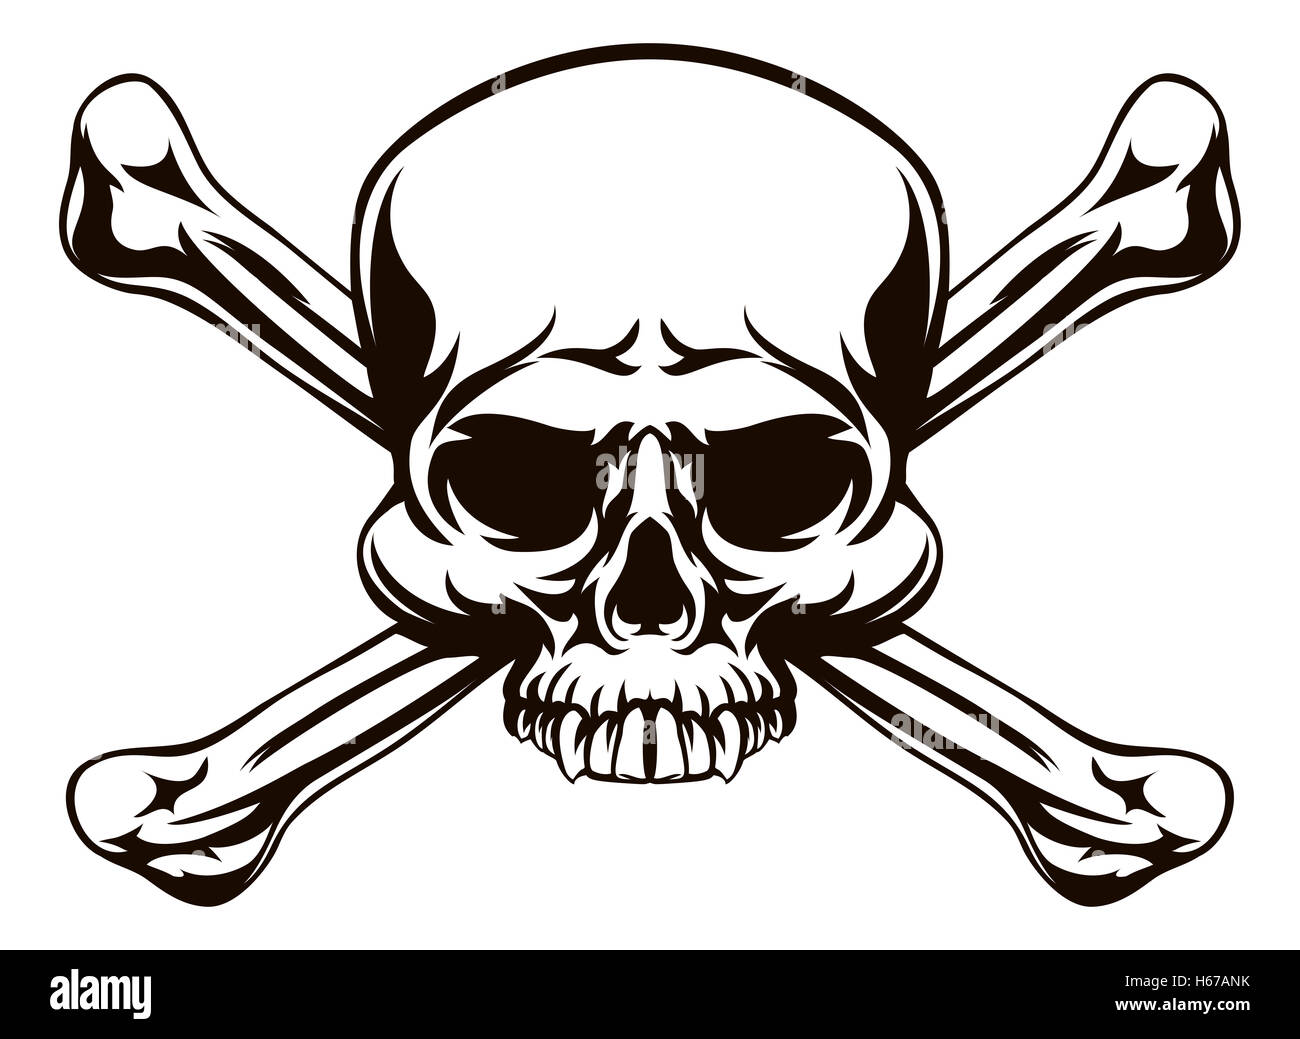 Une tête de mort comme un dessin pirates Jolly roger ou le signe de danger Banque D'Images